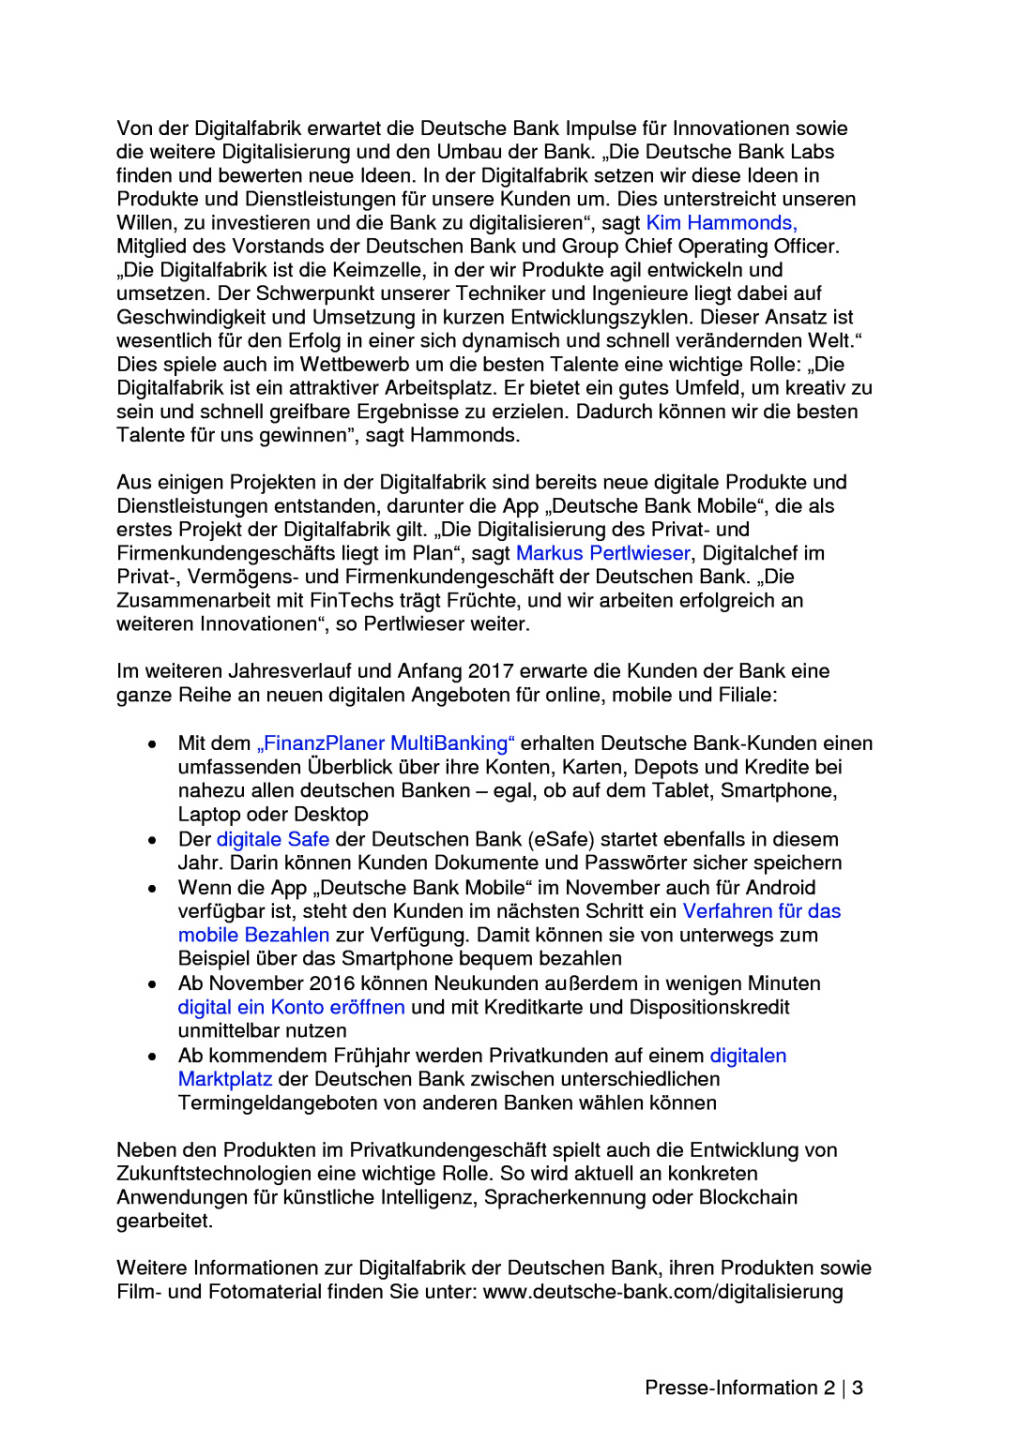 Deutsche Bank eröffnet Digitalfabrik in Frankfurt, Seite 2/3, komplettes Dokument unter http://boerse-social.com/static/uploads/file_1854_deutsche_bank_eroffnet_digitalfabrik_in_frankfurt.pdf